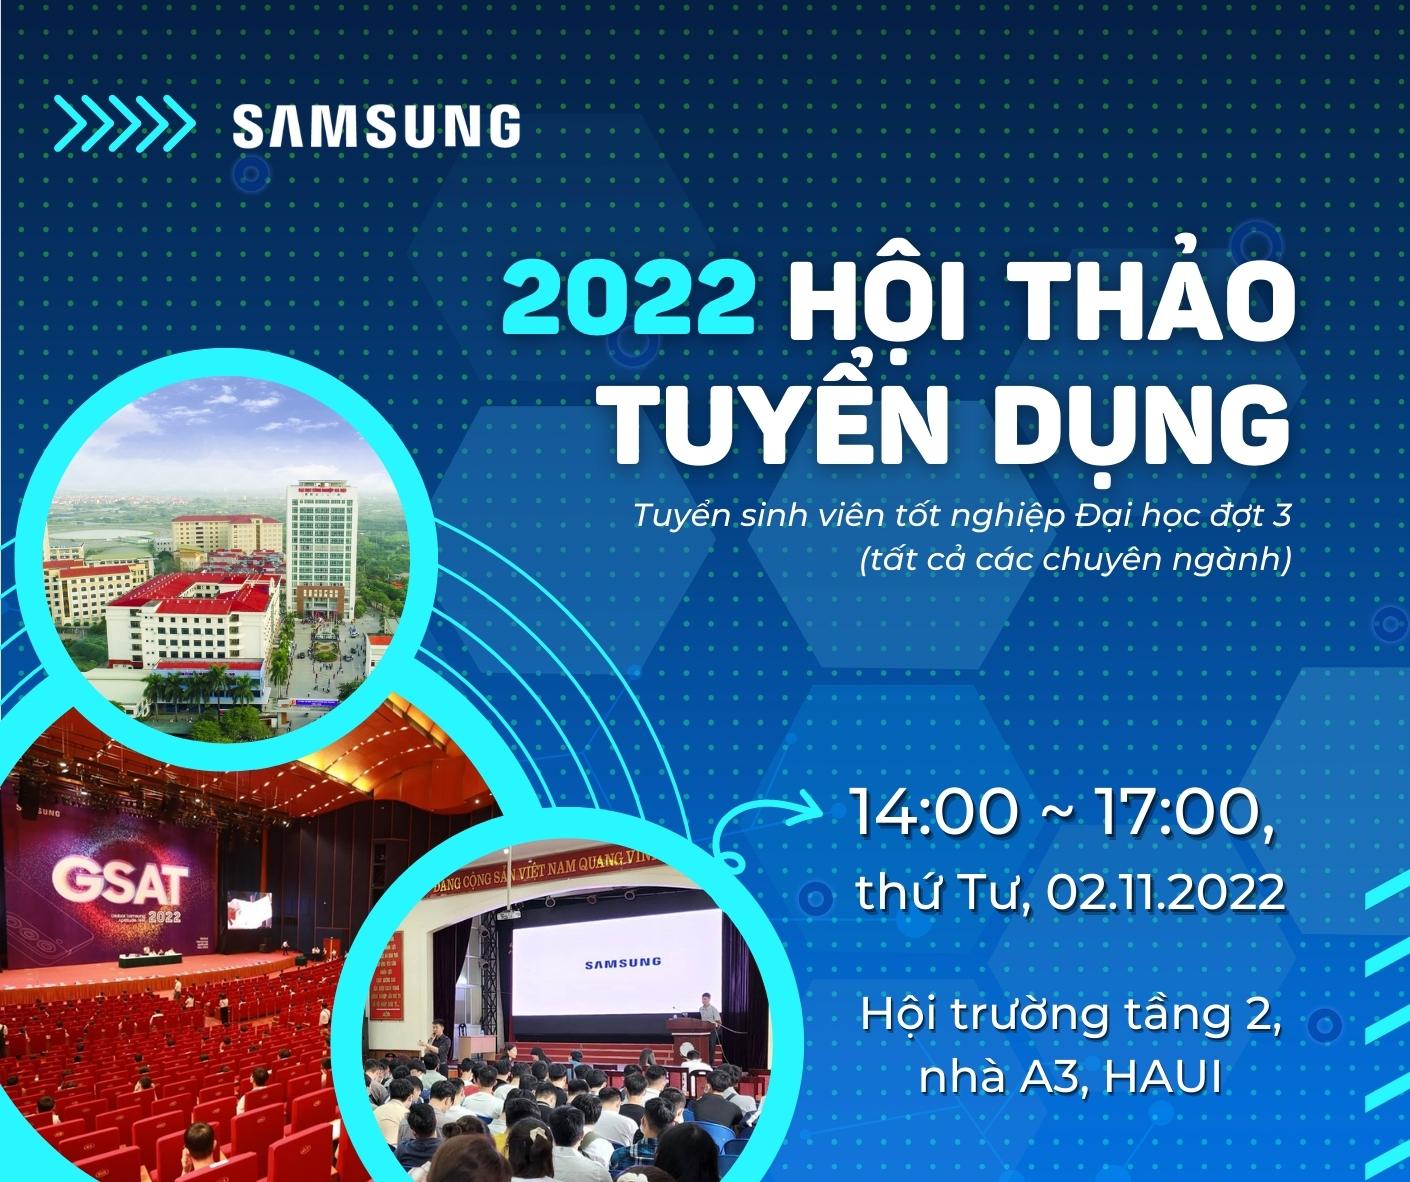 Kế hoạch tổ chức Hội thảo việc làm, định hướng nghề nghiệp của Công ty TNHH Samsung Electronics Việt Nam